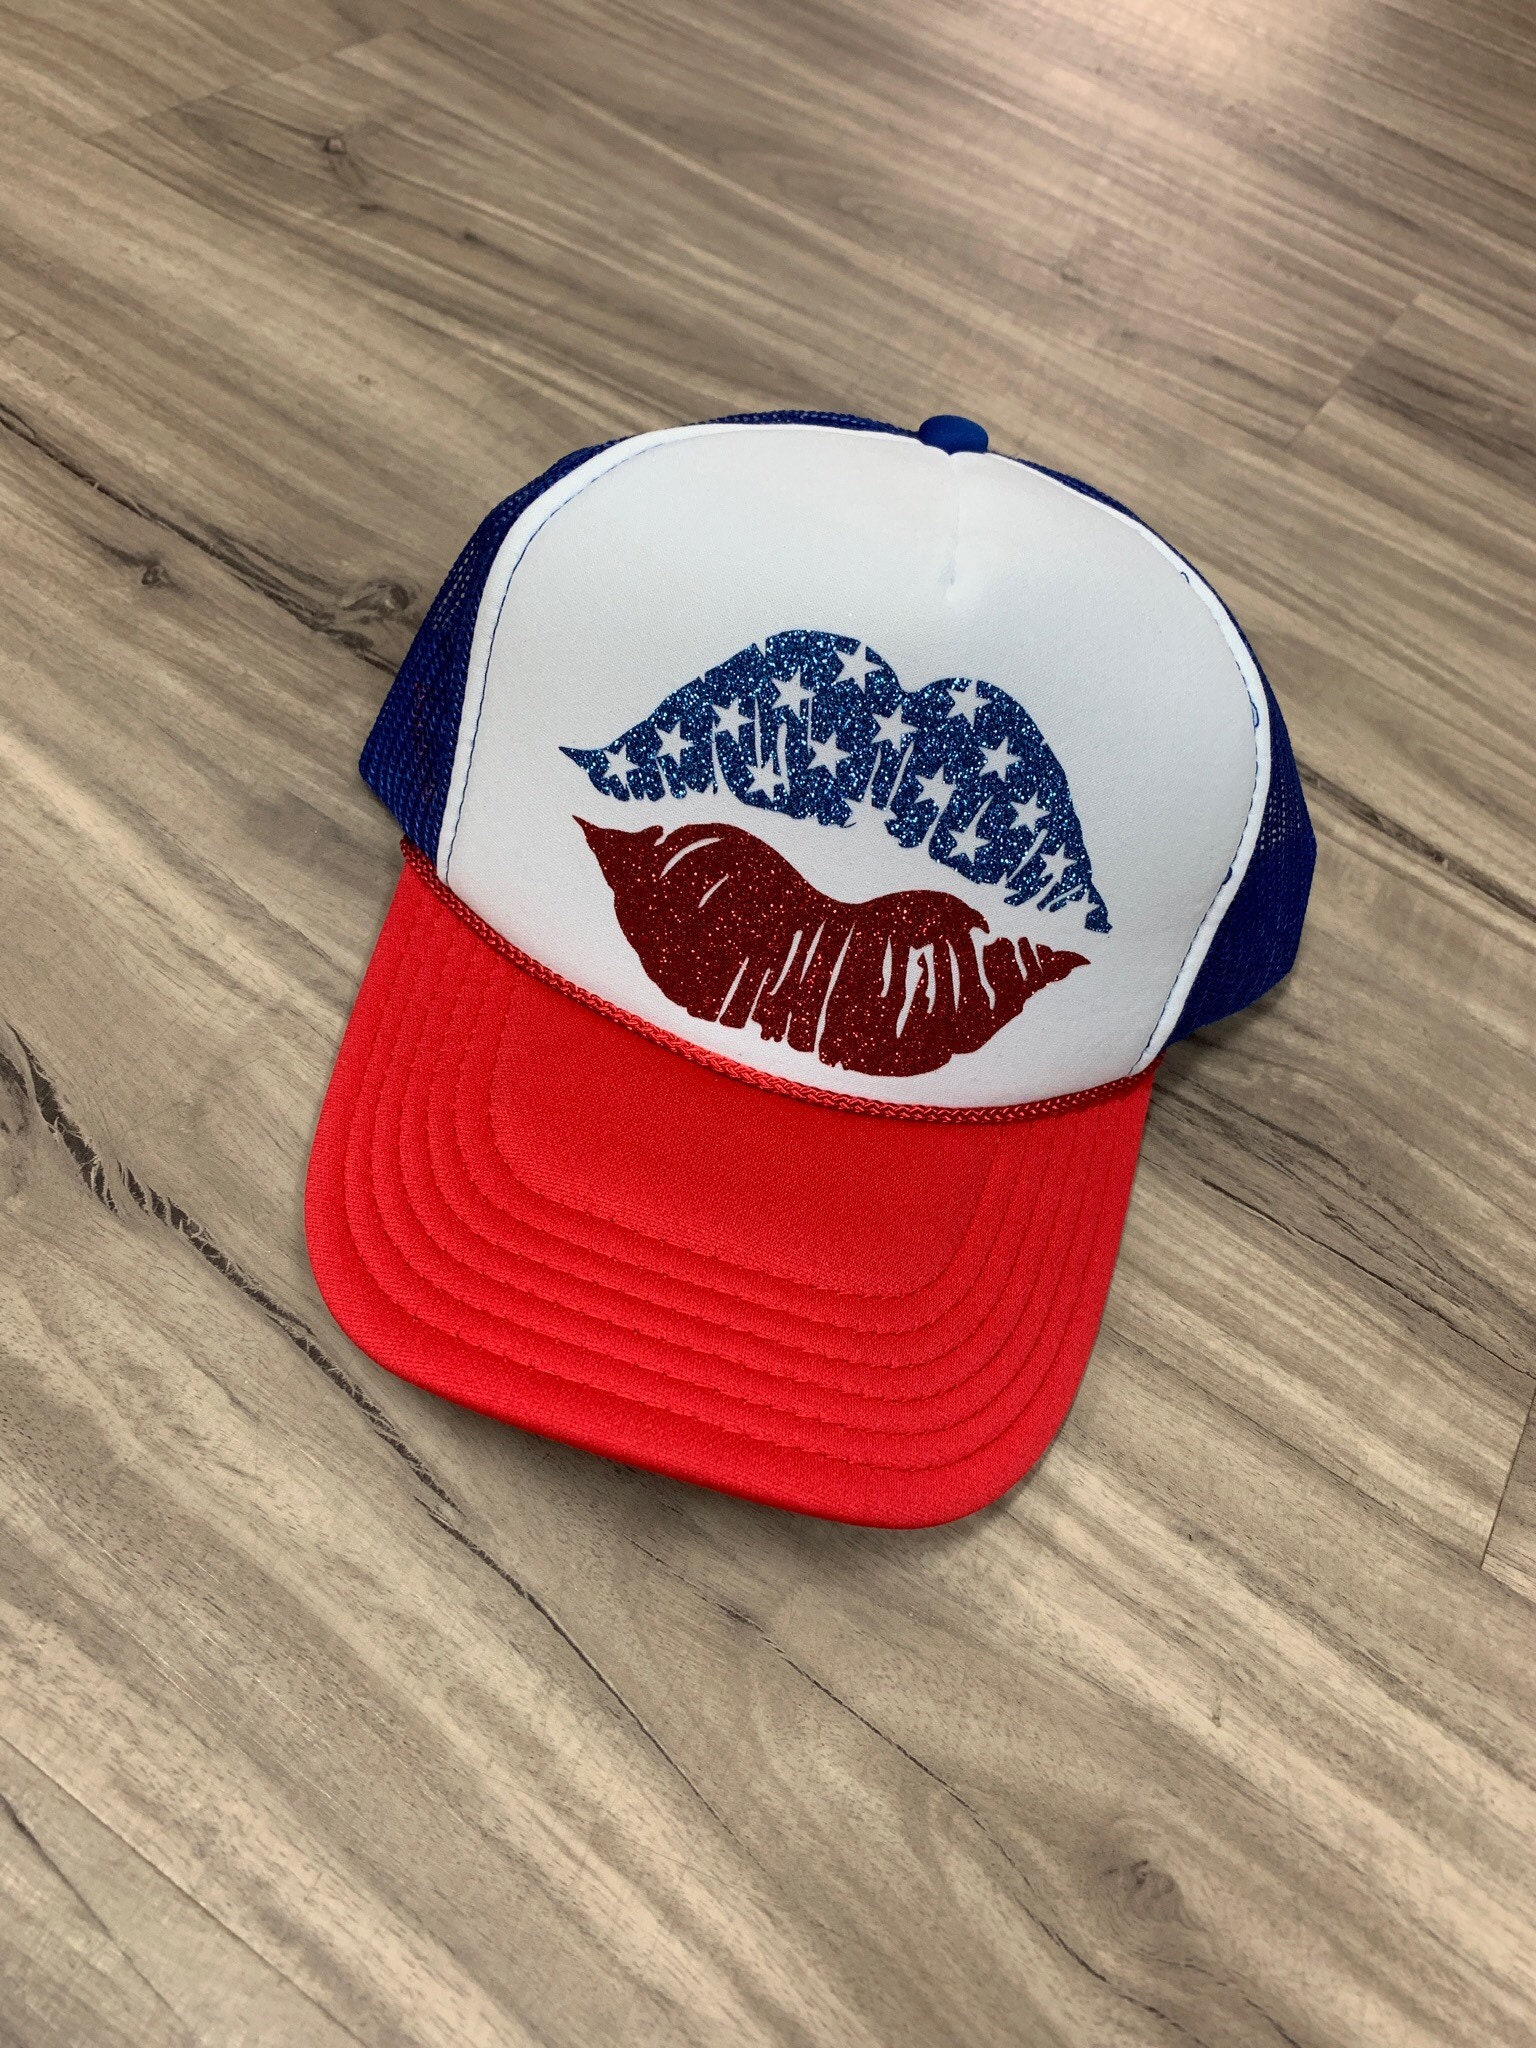 Lips Baseball Hat - Etsy | Baseball Caps